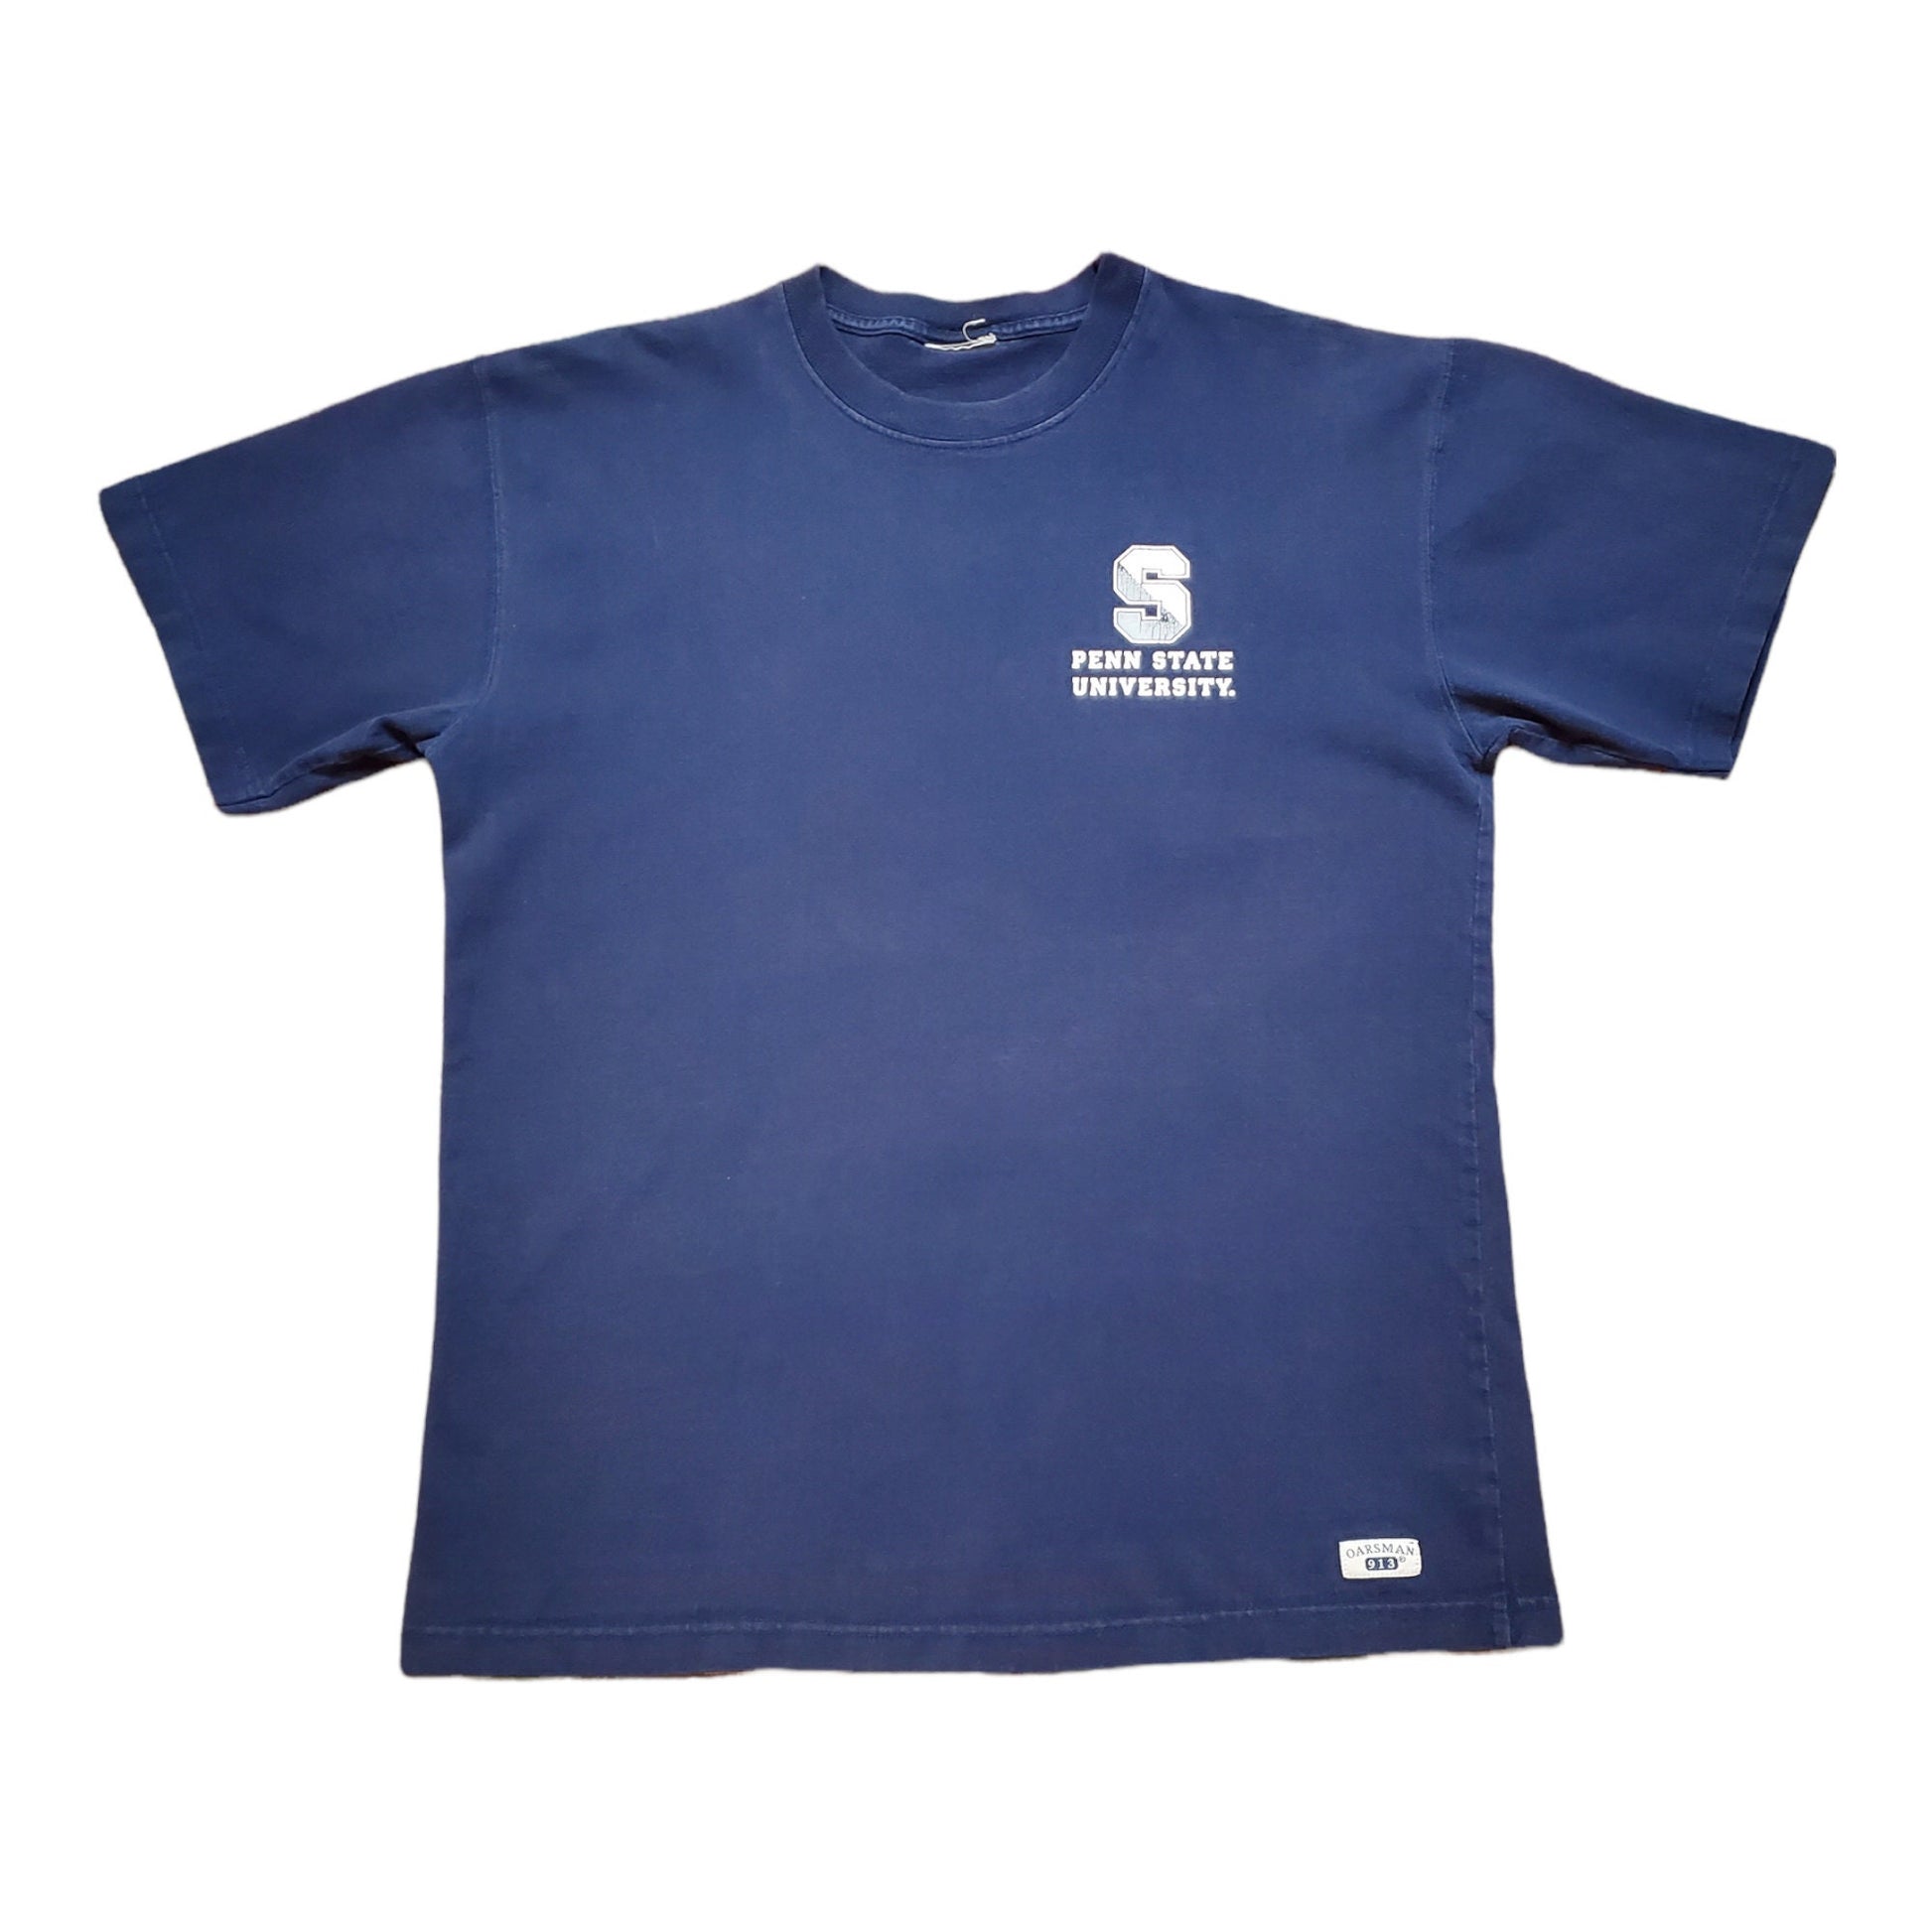 1990s/2000s Penn State University Oarsman T-Shirt Size L